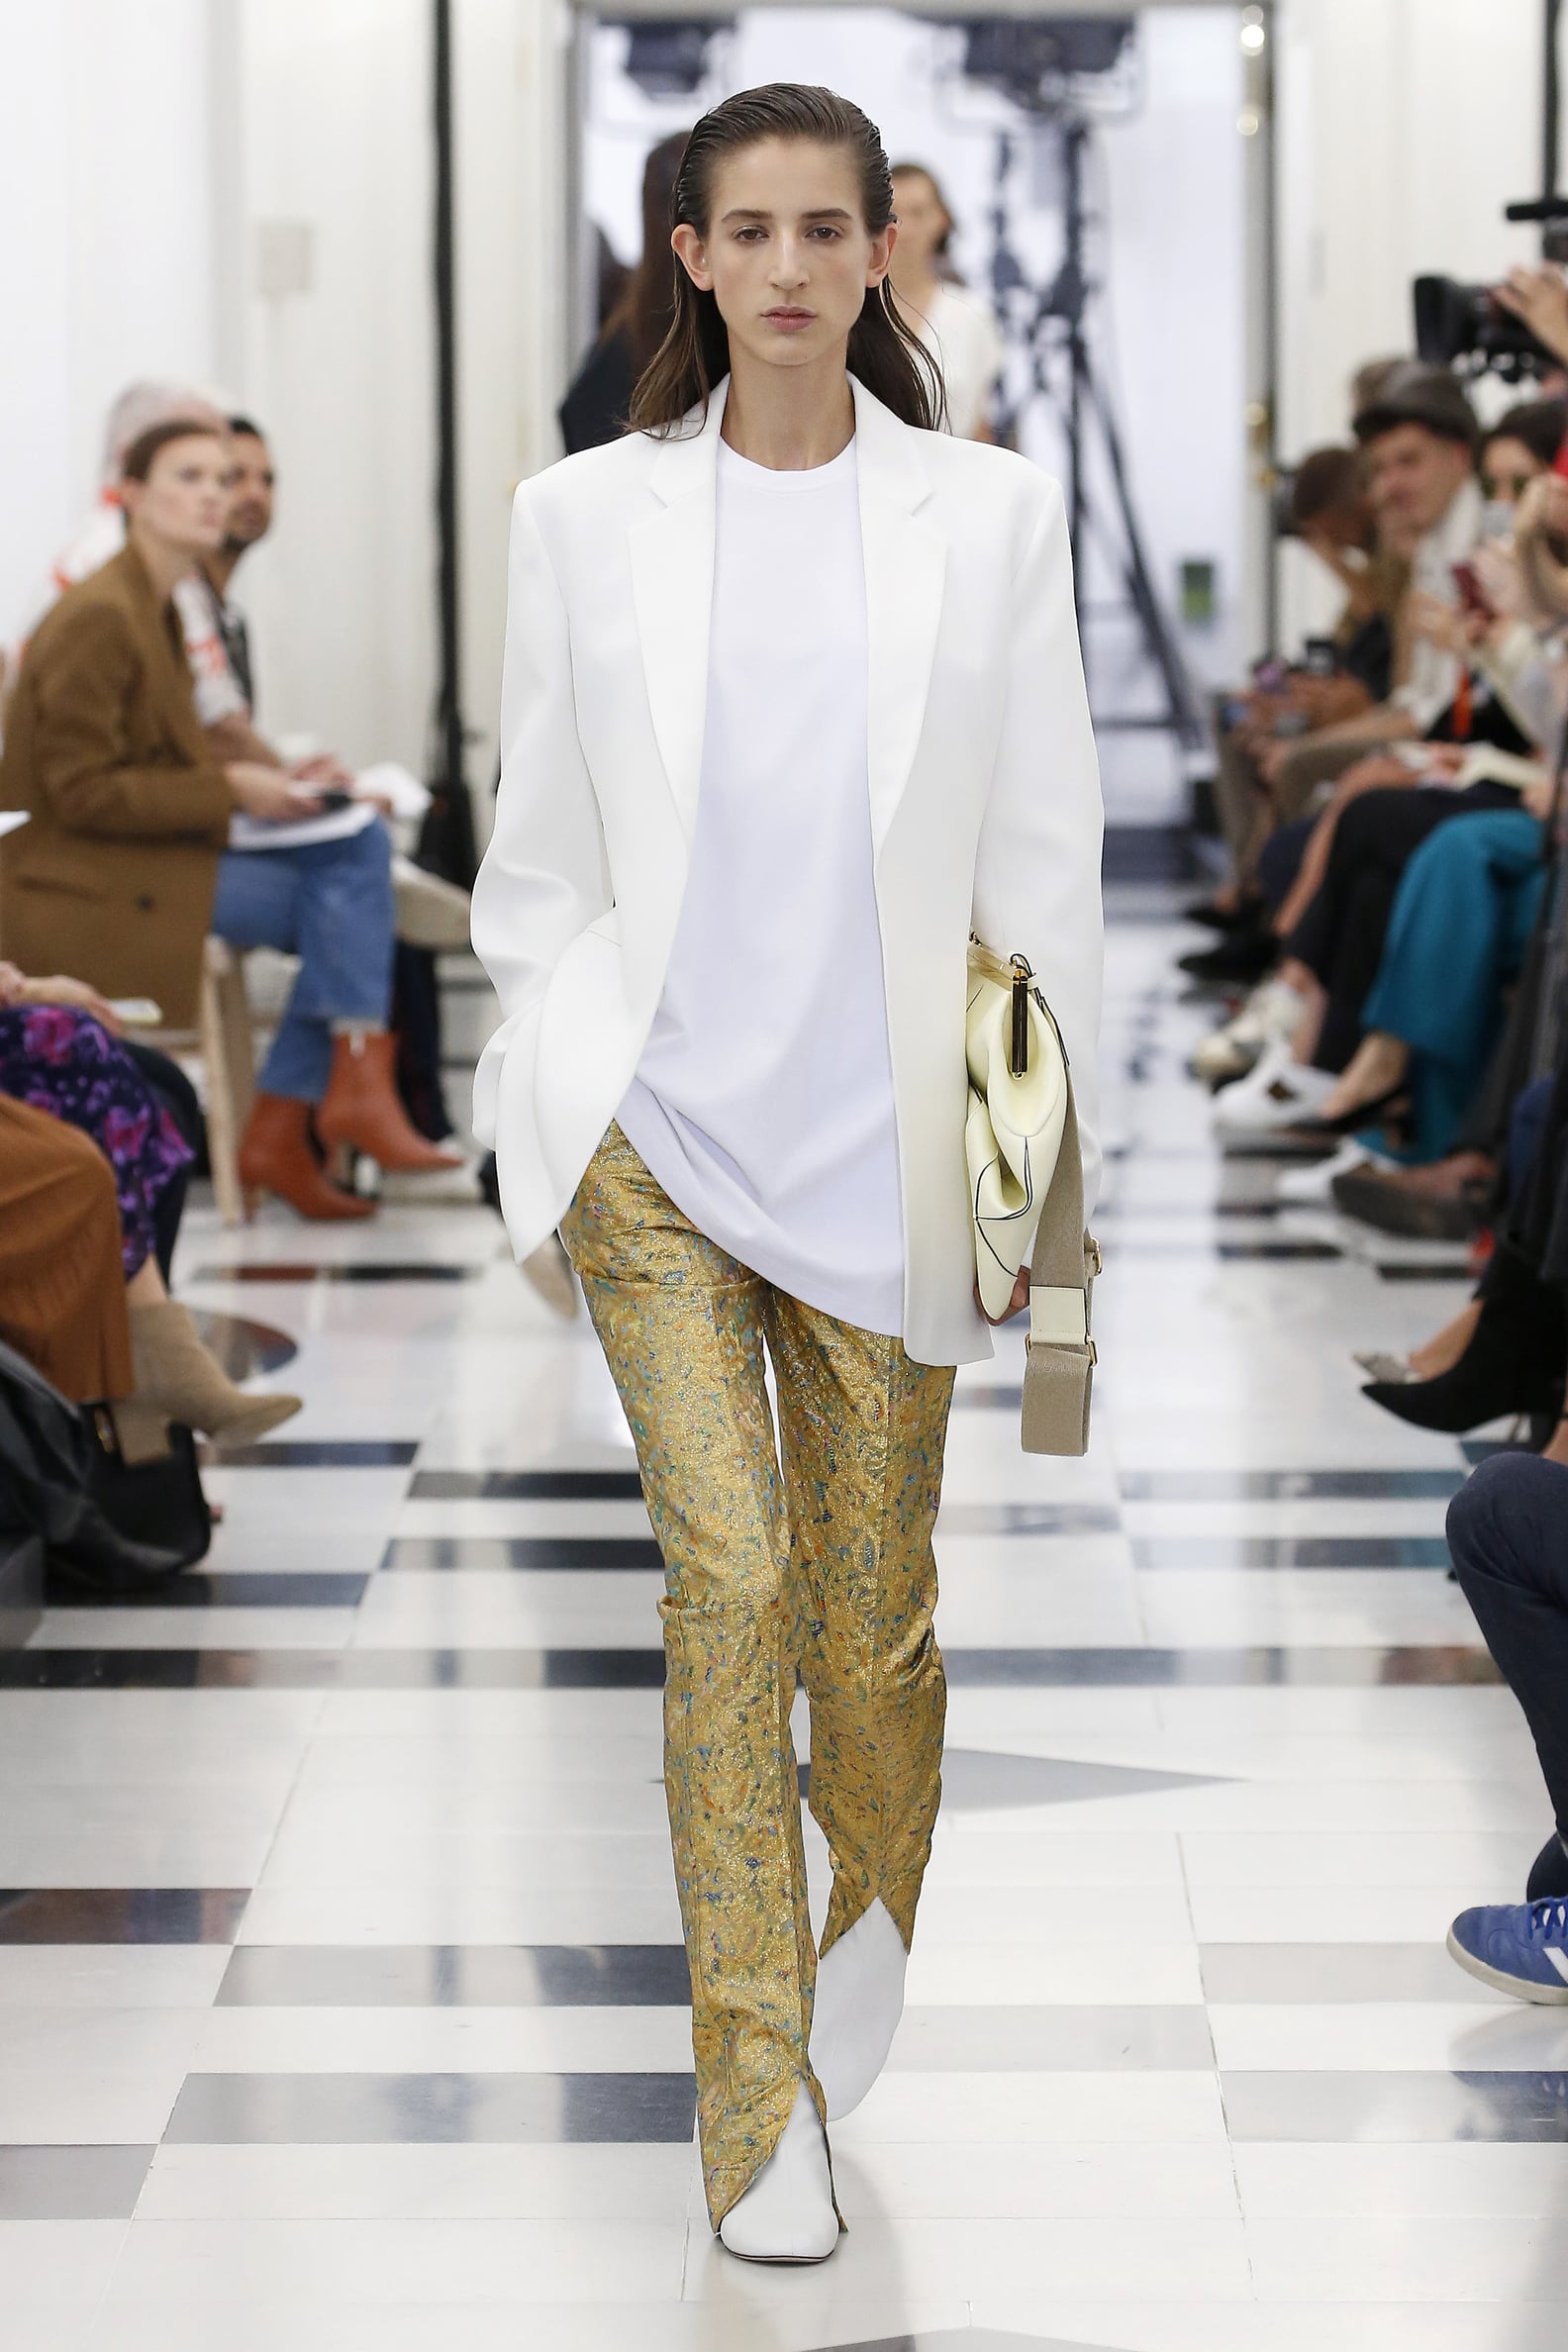 Victoria Beckham's Gold Pants September 2018 | POPSUGAR Fashion